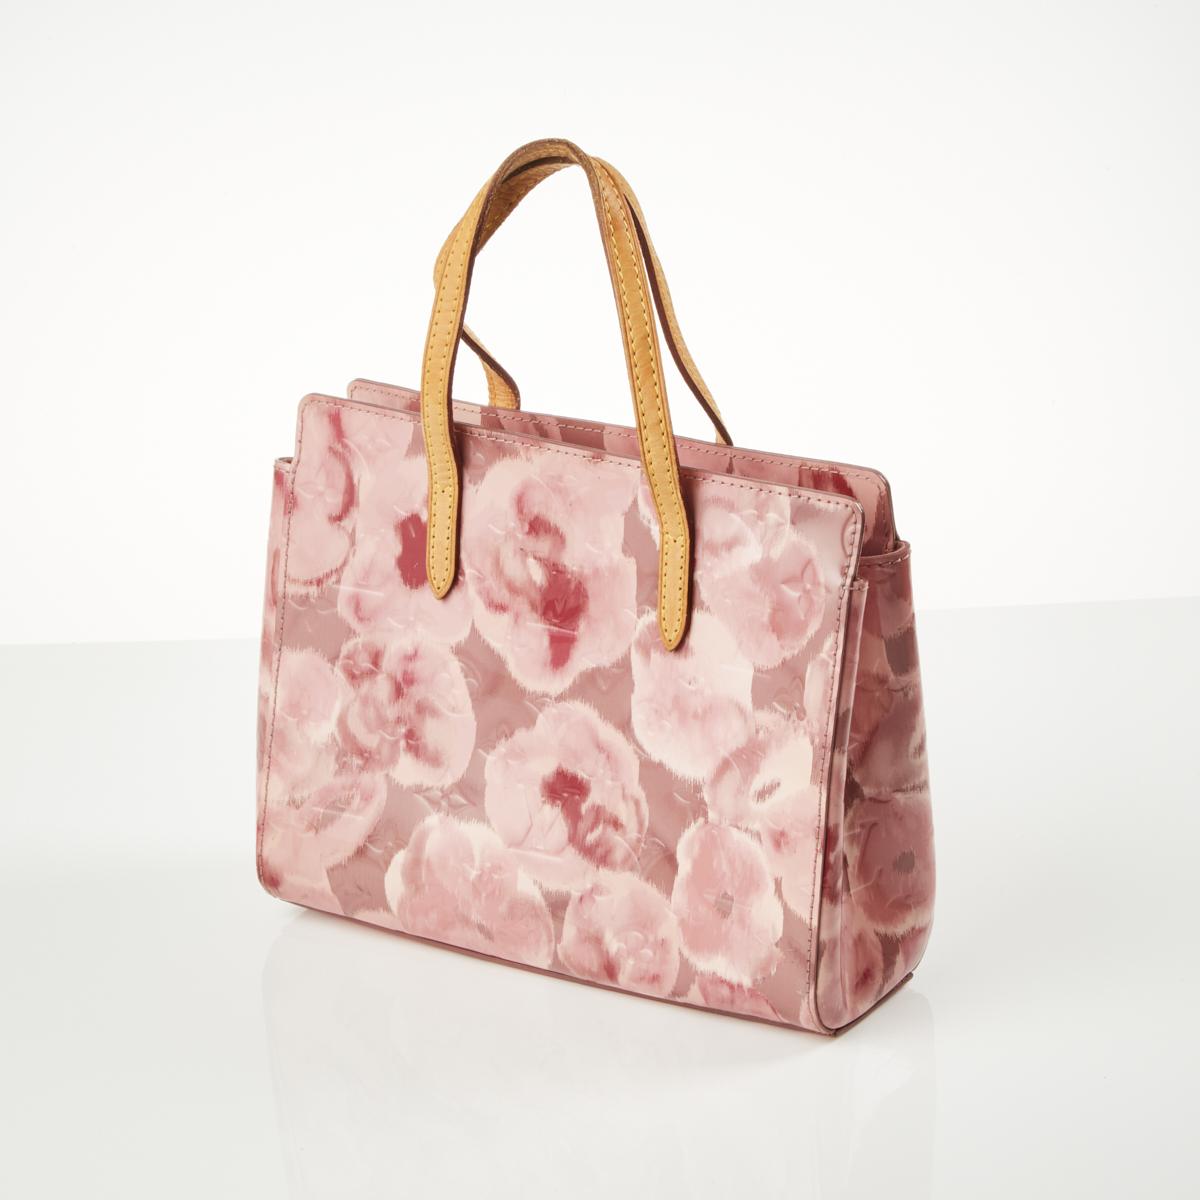 Louis Vuitton Vernis Ikat Catalina - Totes, Handbags